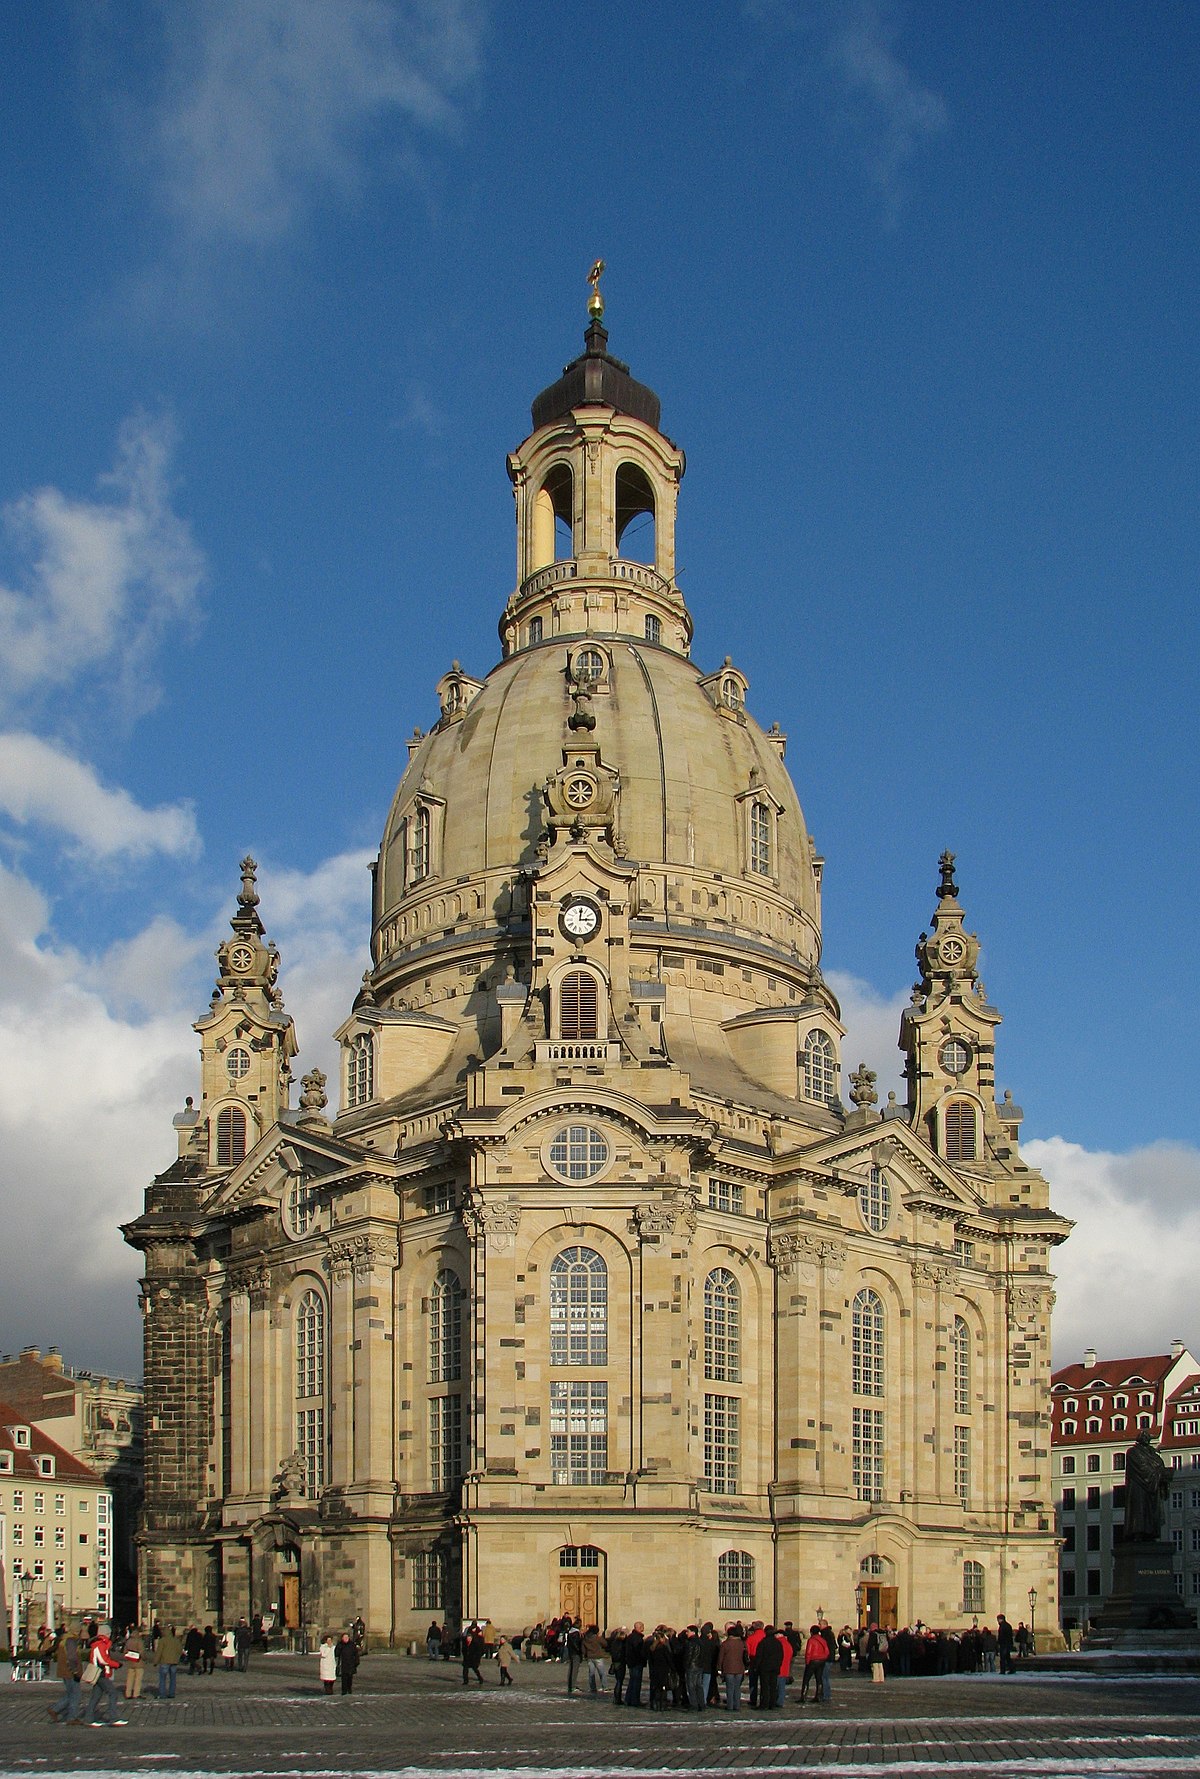 1200px-100130_150006_Dresden_Frauenkirche_winter_blue_sky-2.jpg